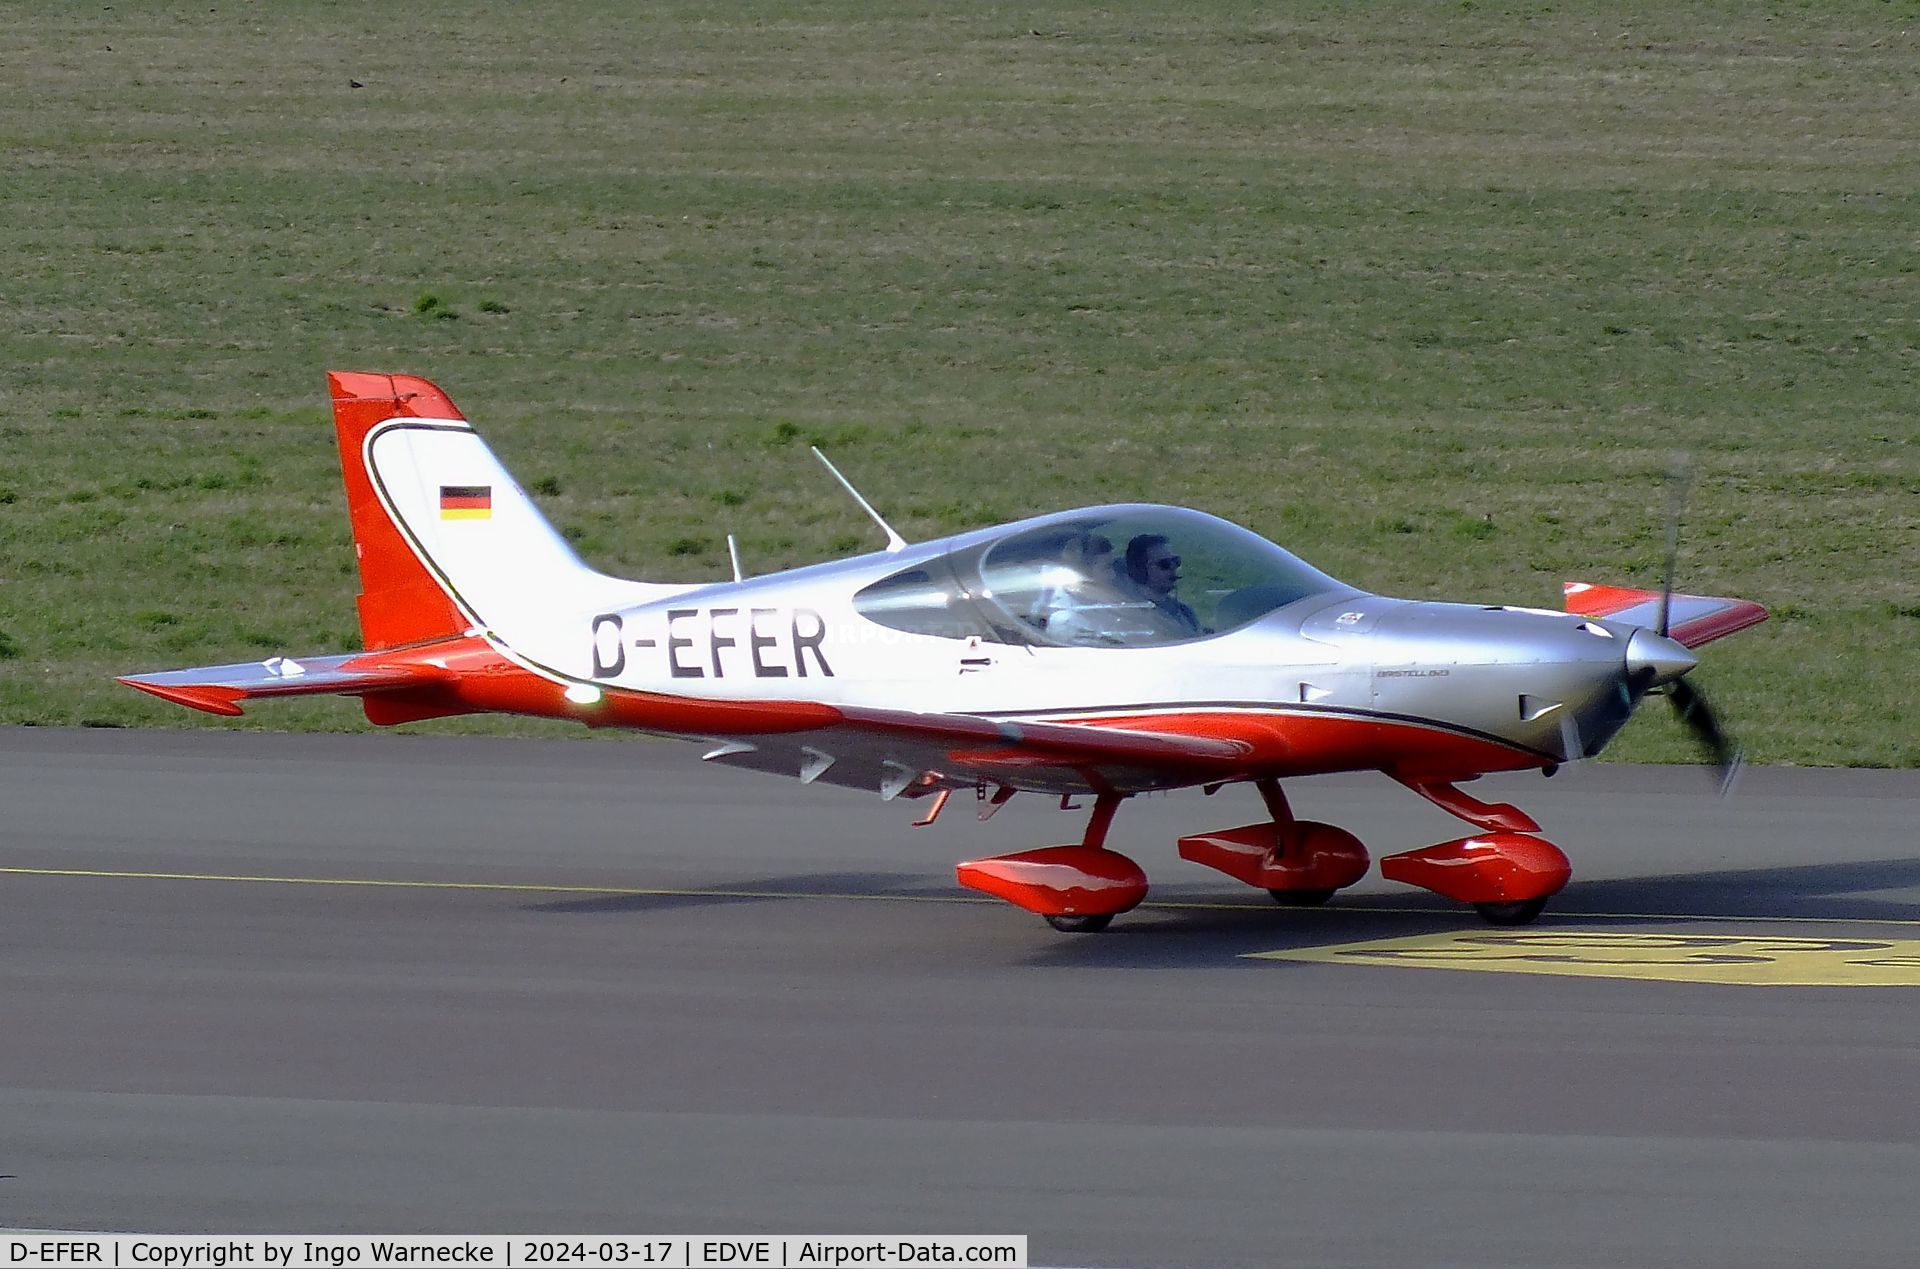 D-EFER, 2023 BRM Aero Bristell B23 C/N 112, BRM Aero Bristell B23 at Braunschweig/Wolfsburg airport, Waggum